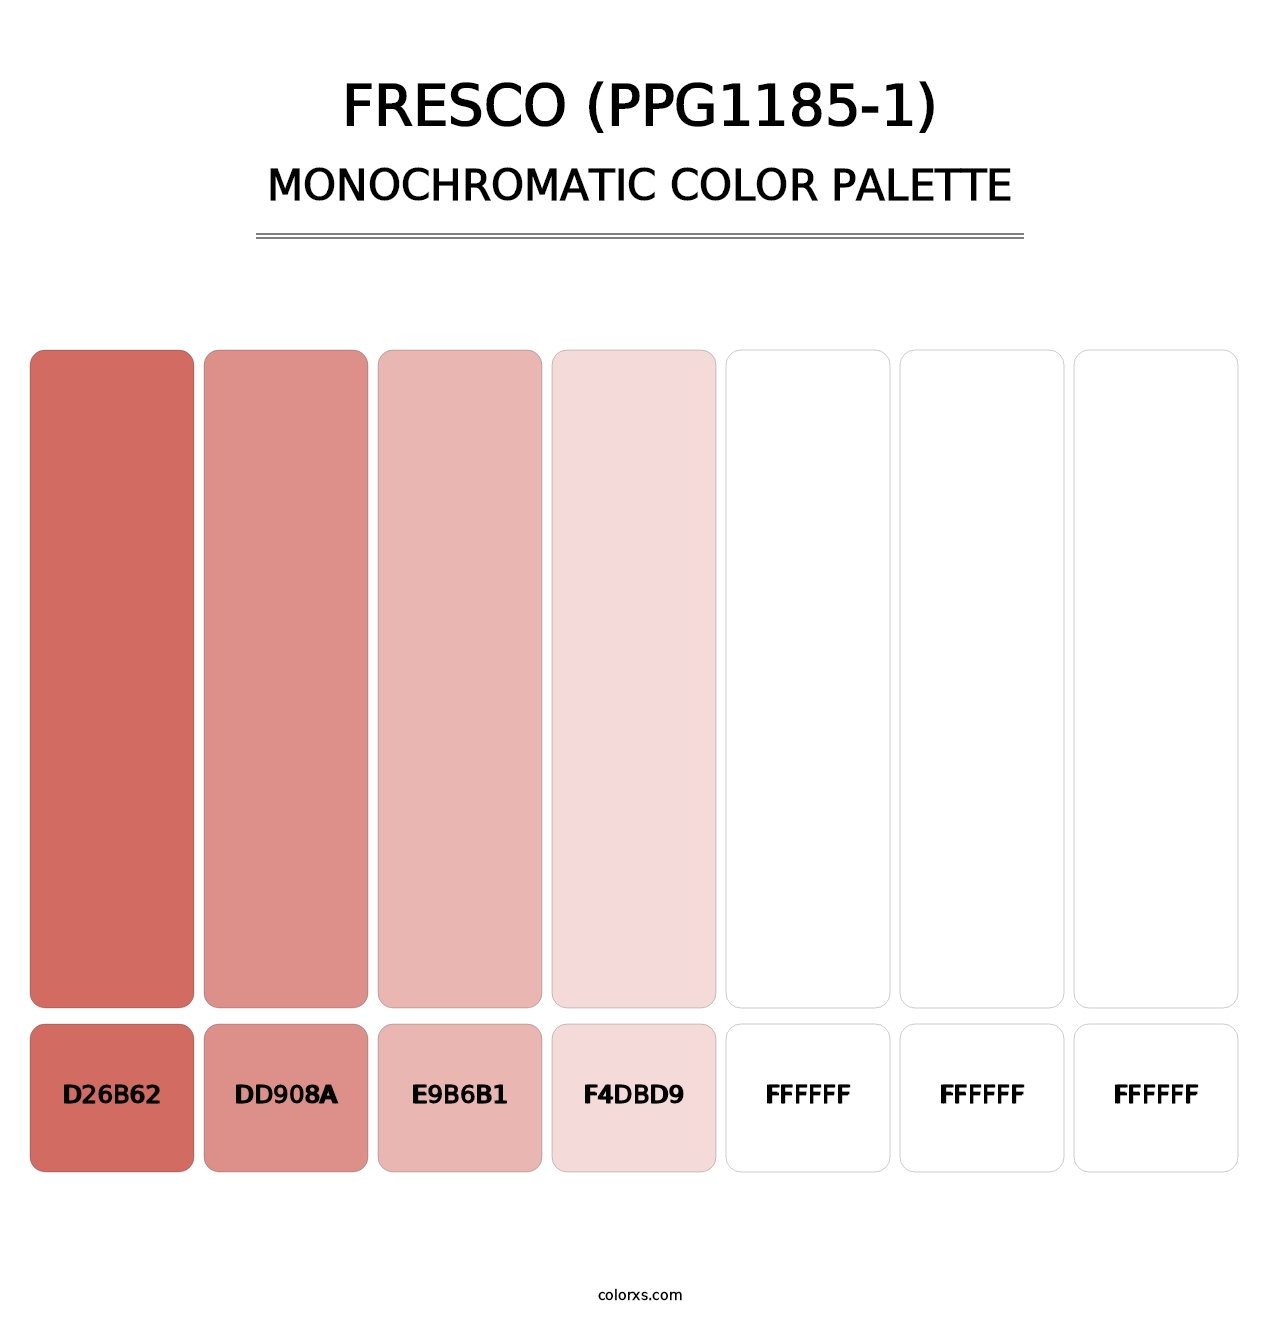 Fresco (PPG1185-1) - Monochromatic Color Palette